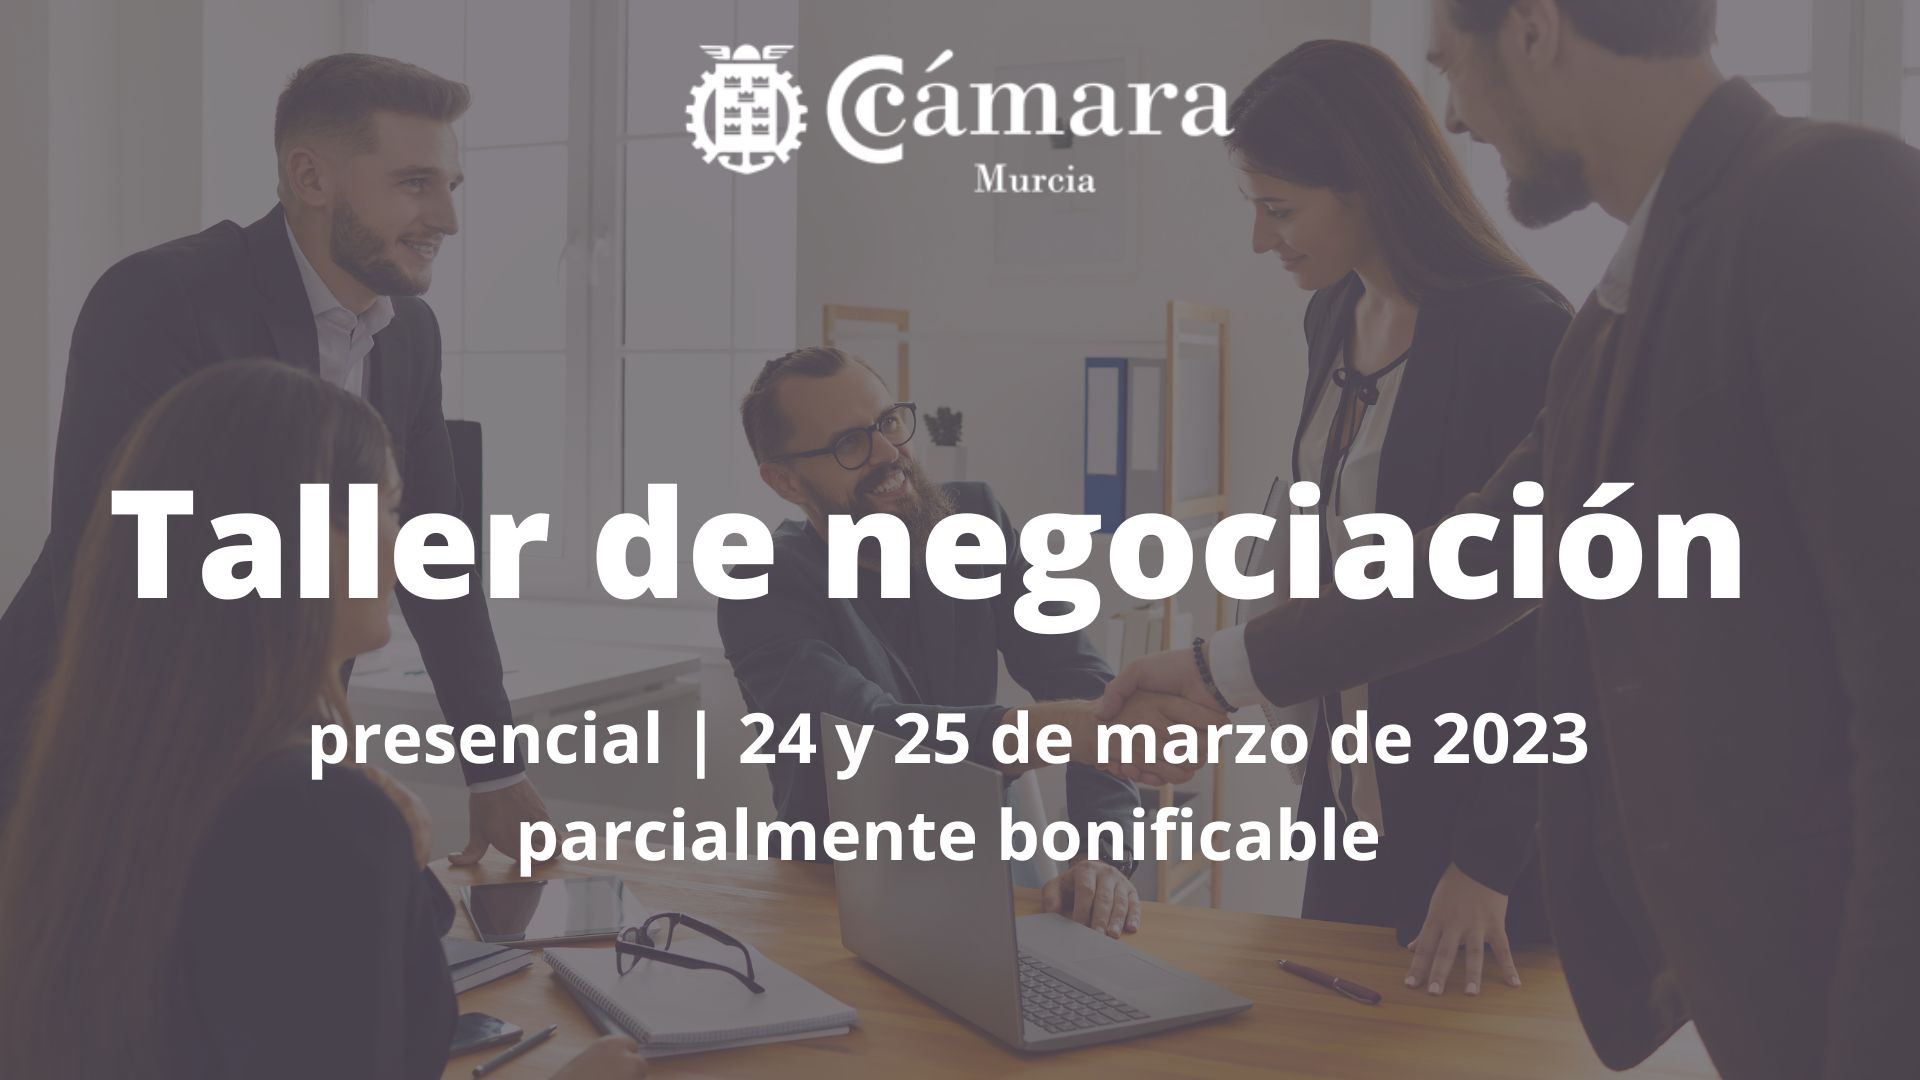 Taller de negociación | Cámara de Comercio de Murcia | tercera edición